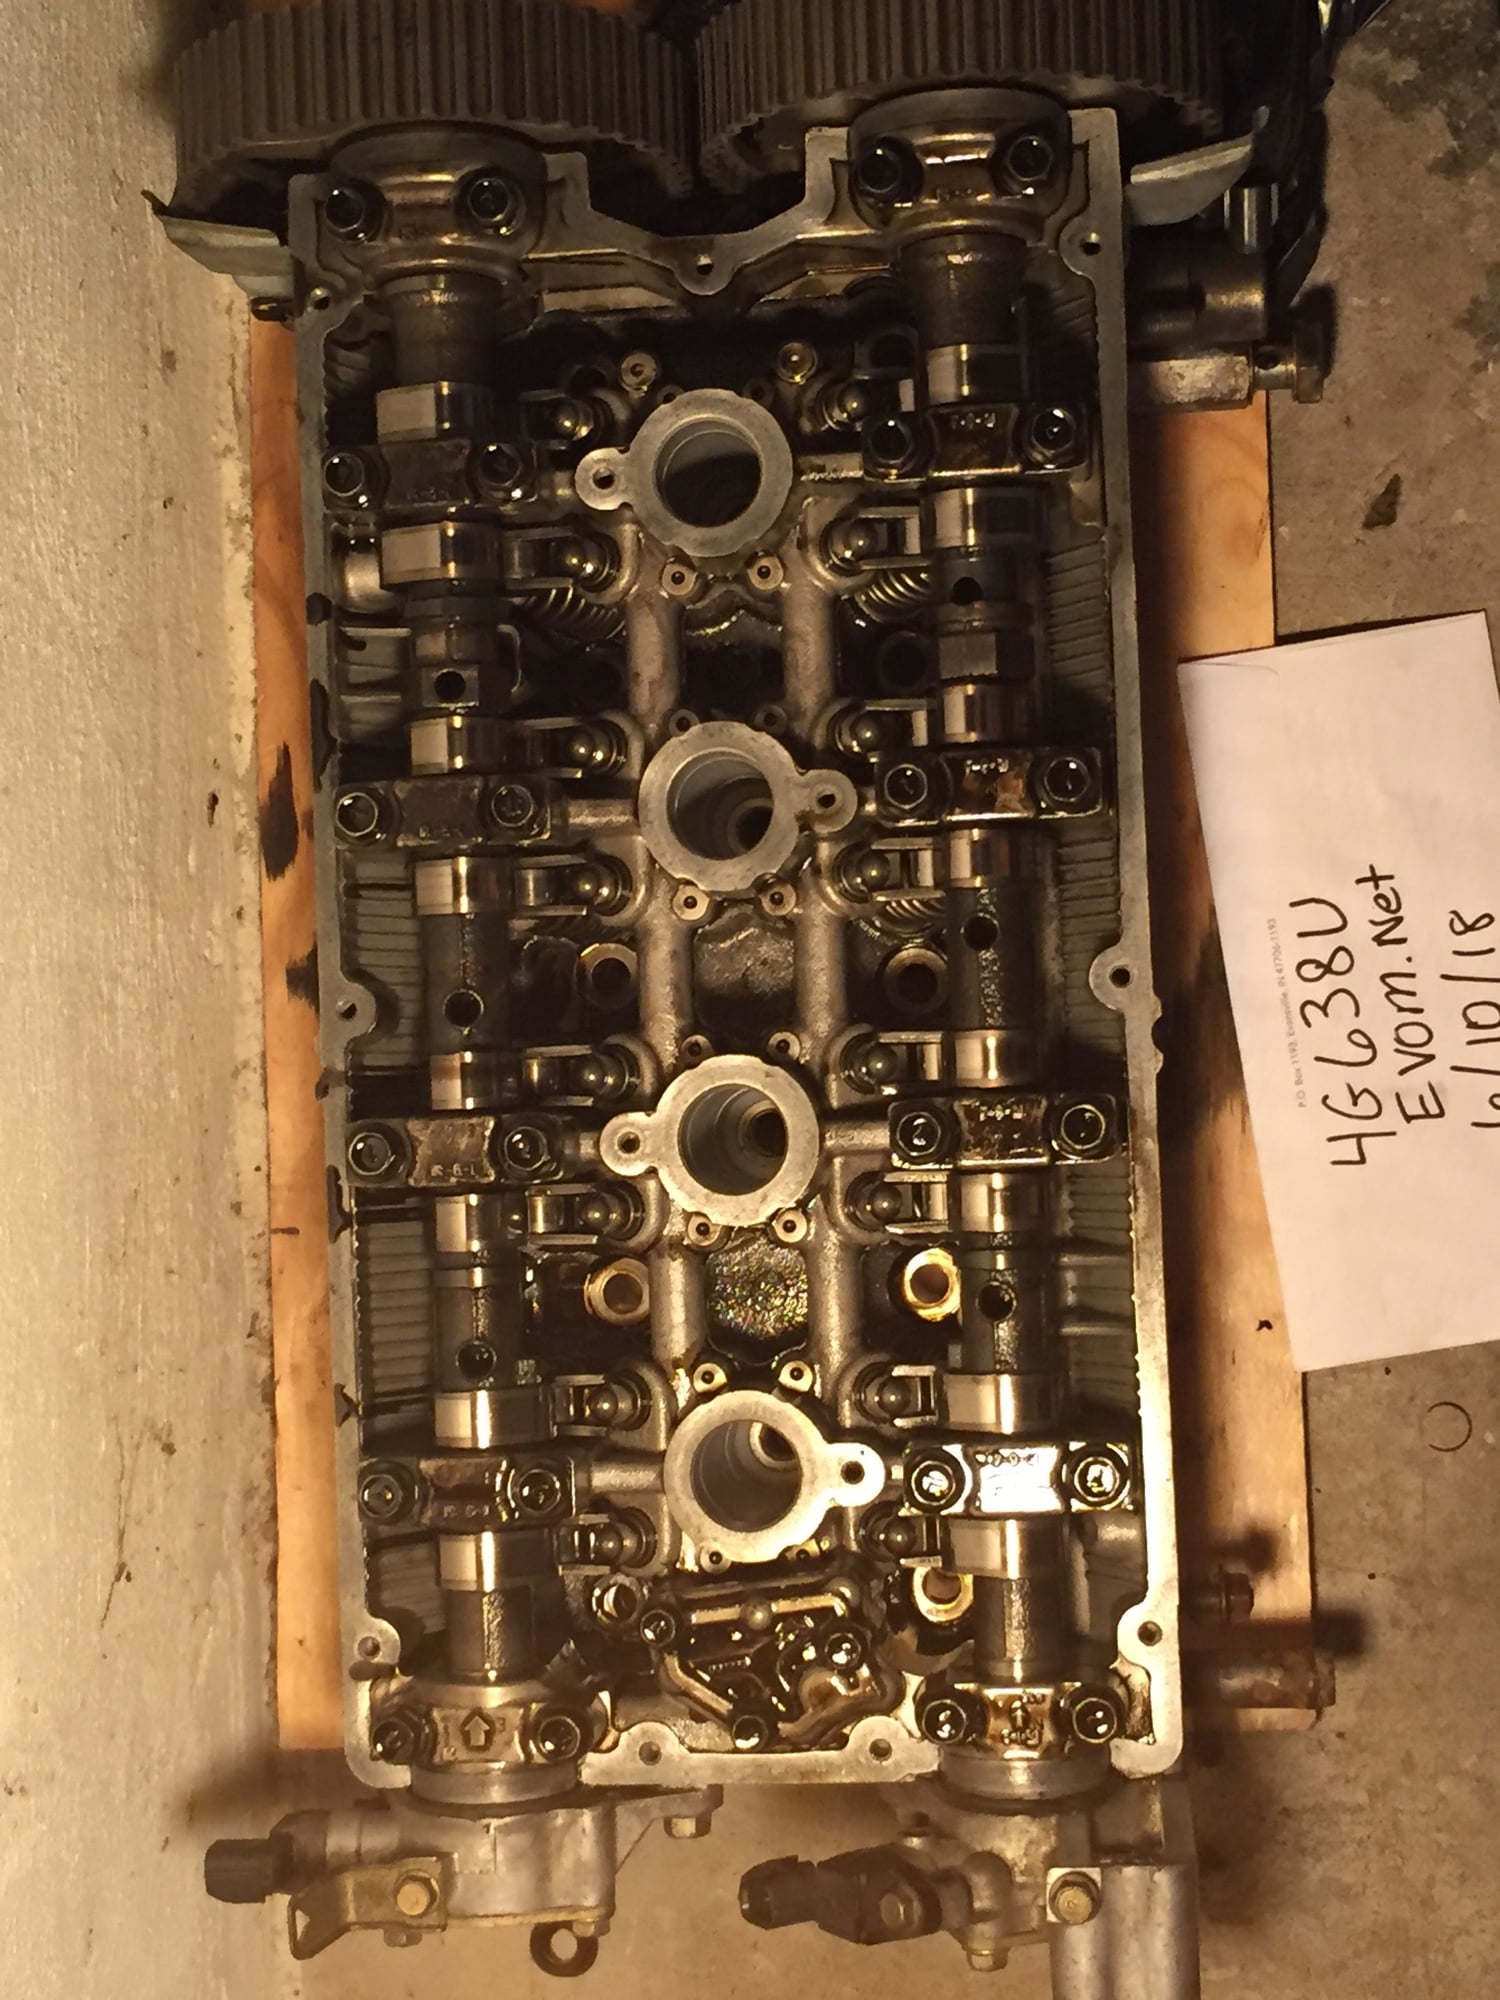 Engine - Power Adders - Evo 9 head - Used - Roanoke, VA 24012, United States